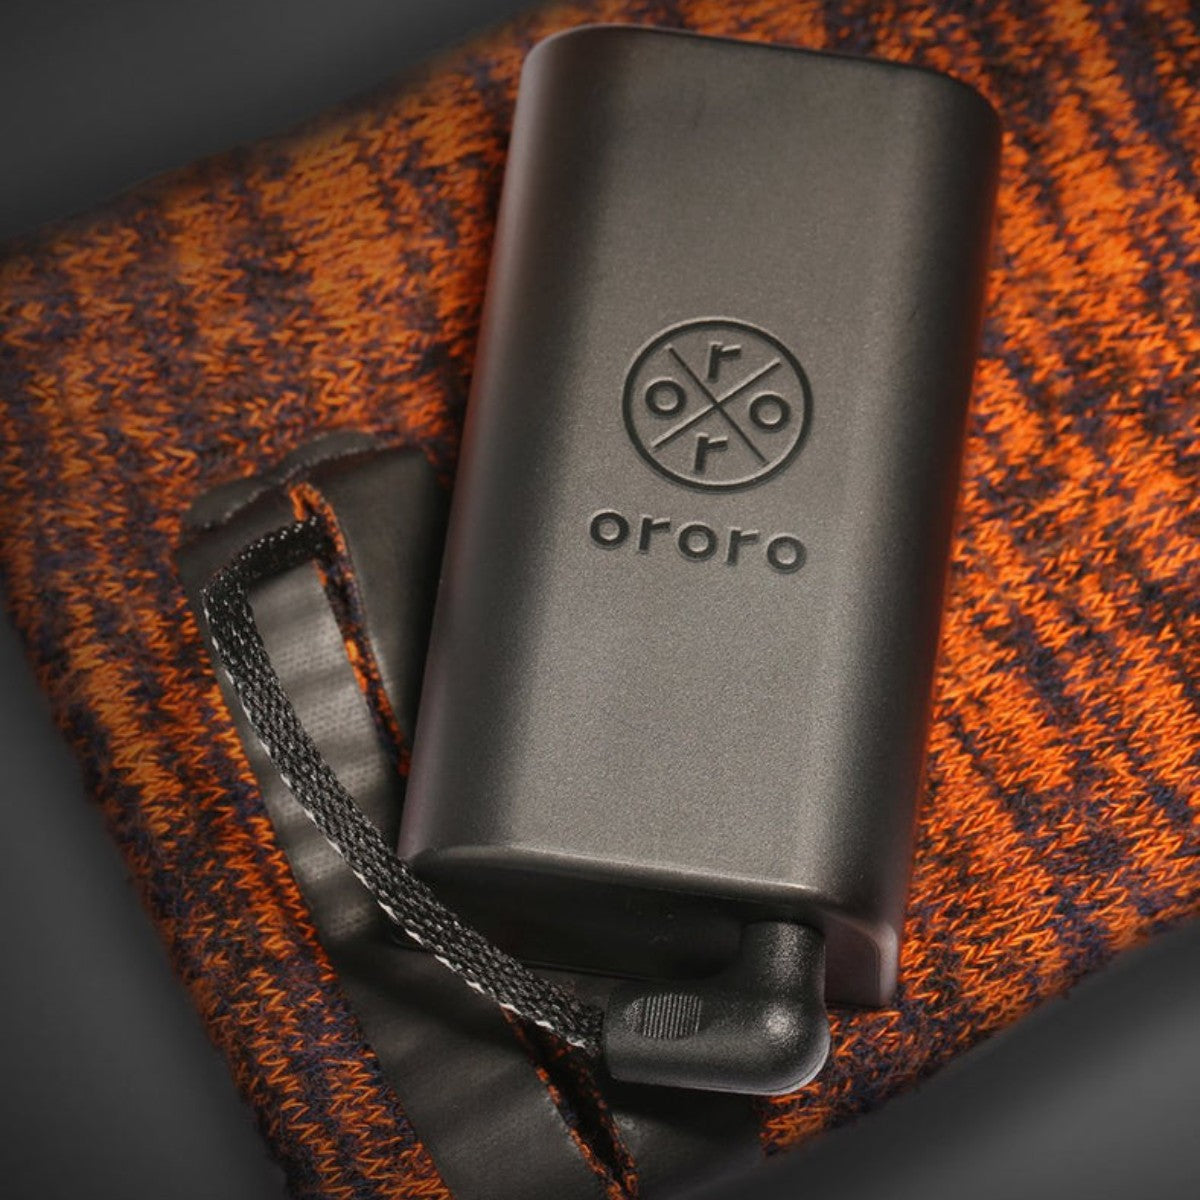 Ororo 3200 MAH Heated Socks Battery